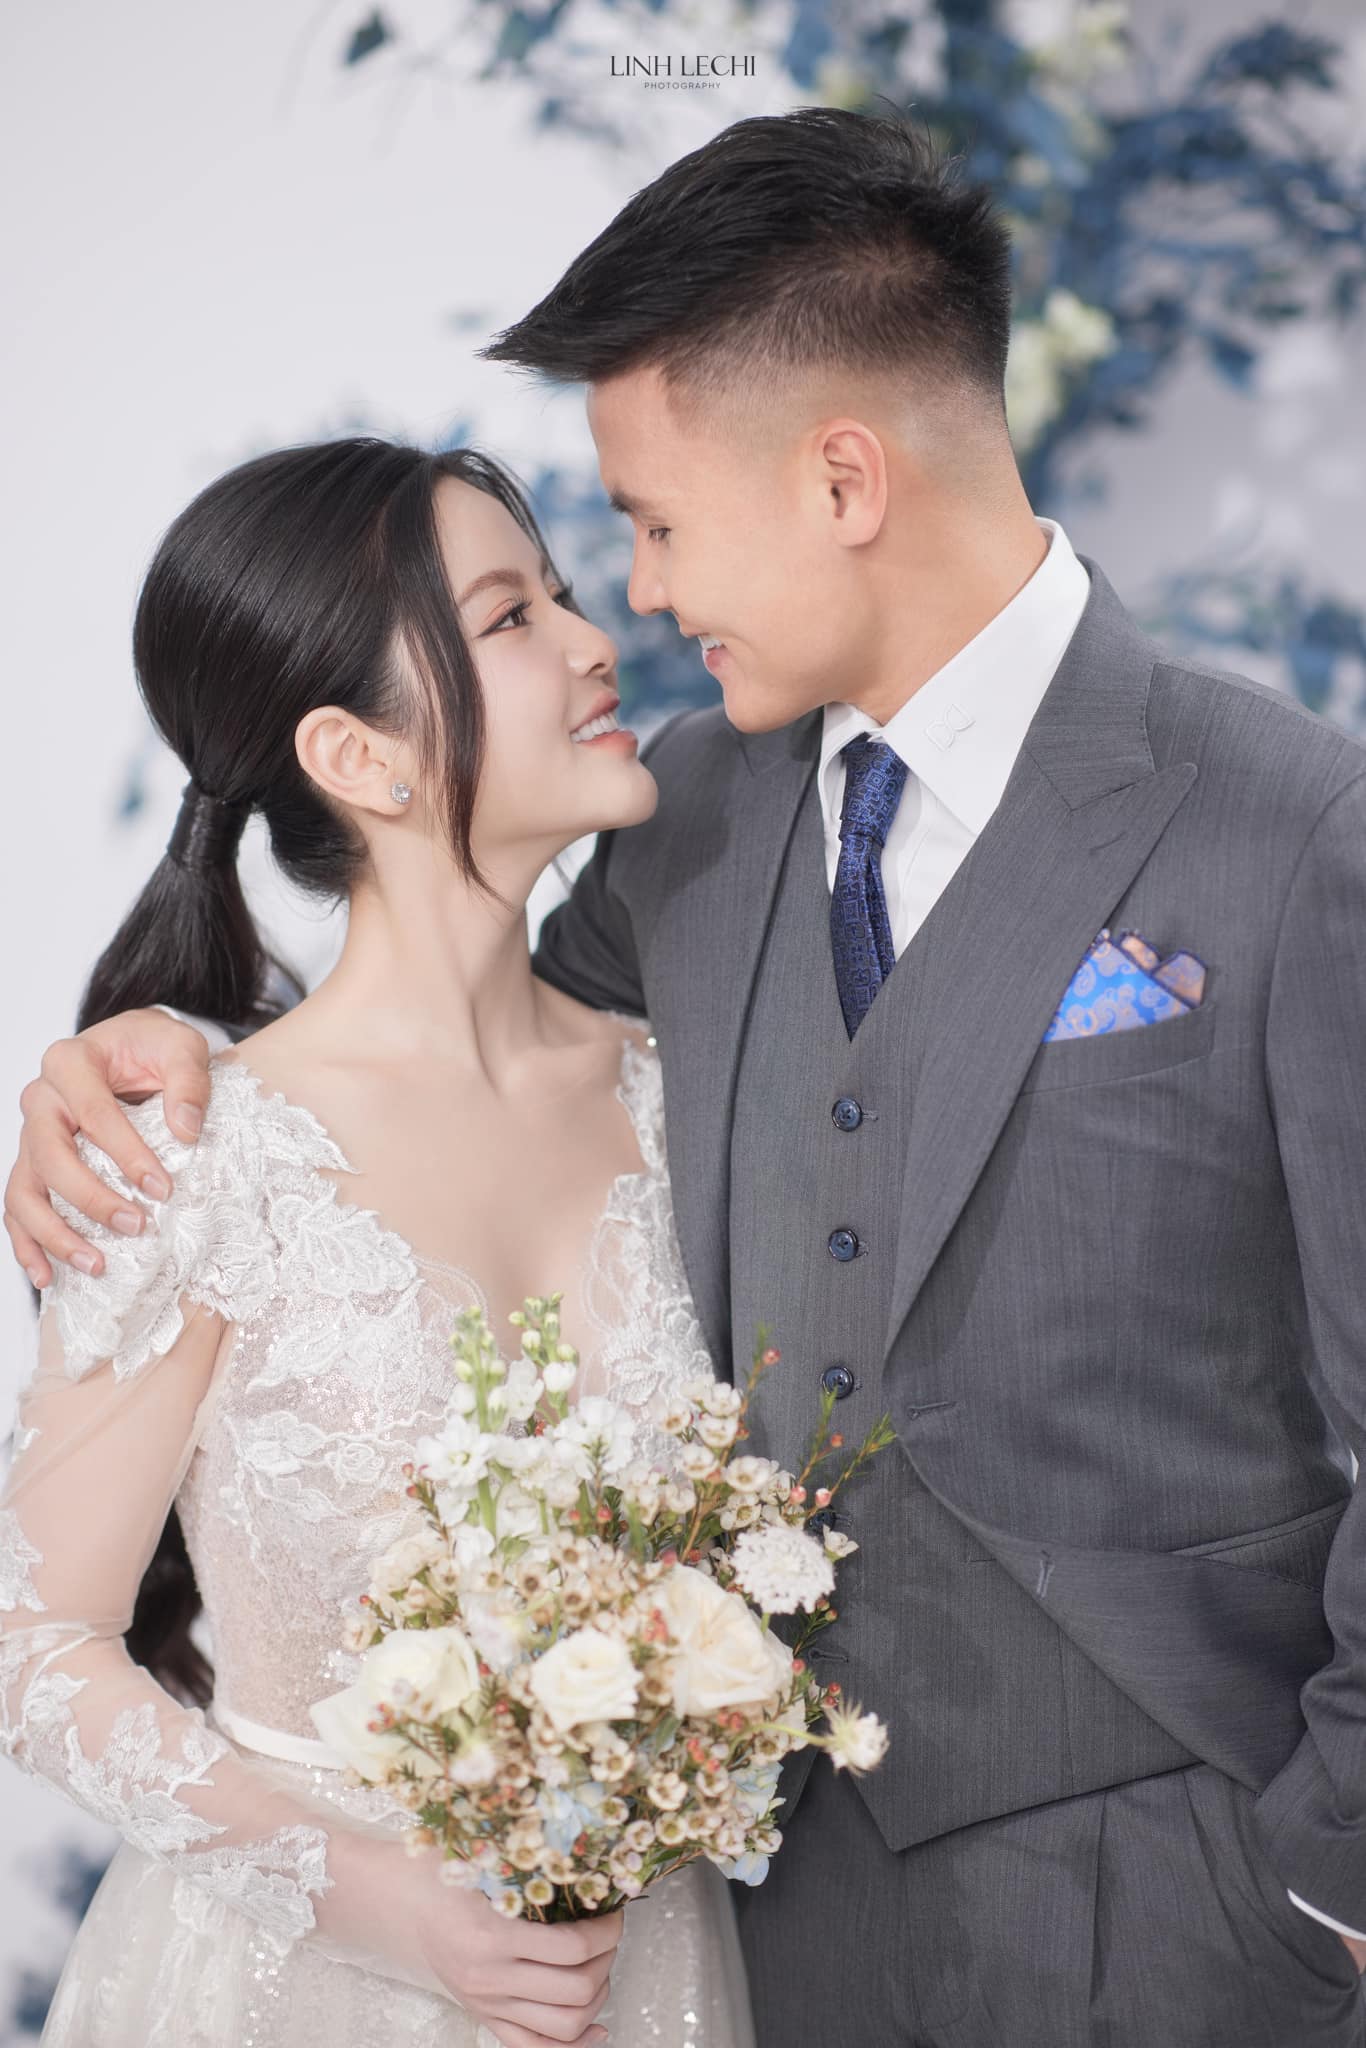 Quang Hải và Chu Thanh Huyền tung ảnh cưới, nhưng chiều cao 'bất ổn' của chú rể gây hoang mang - ảnh 5